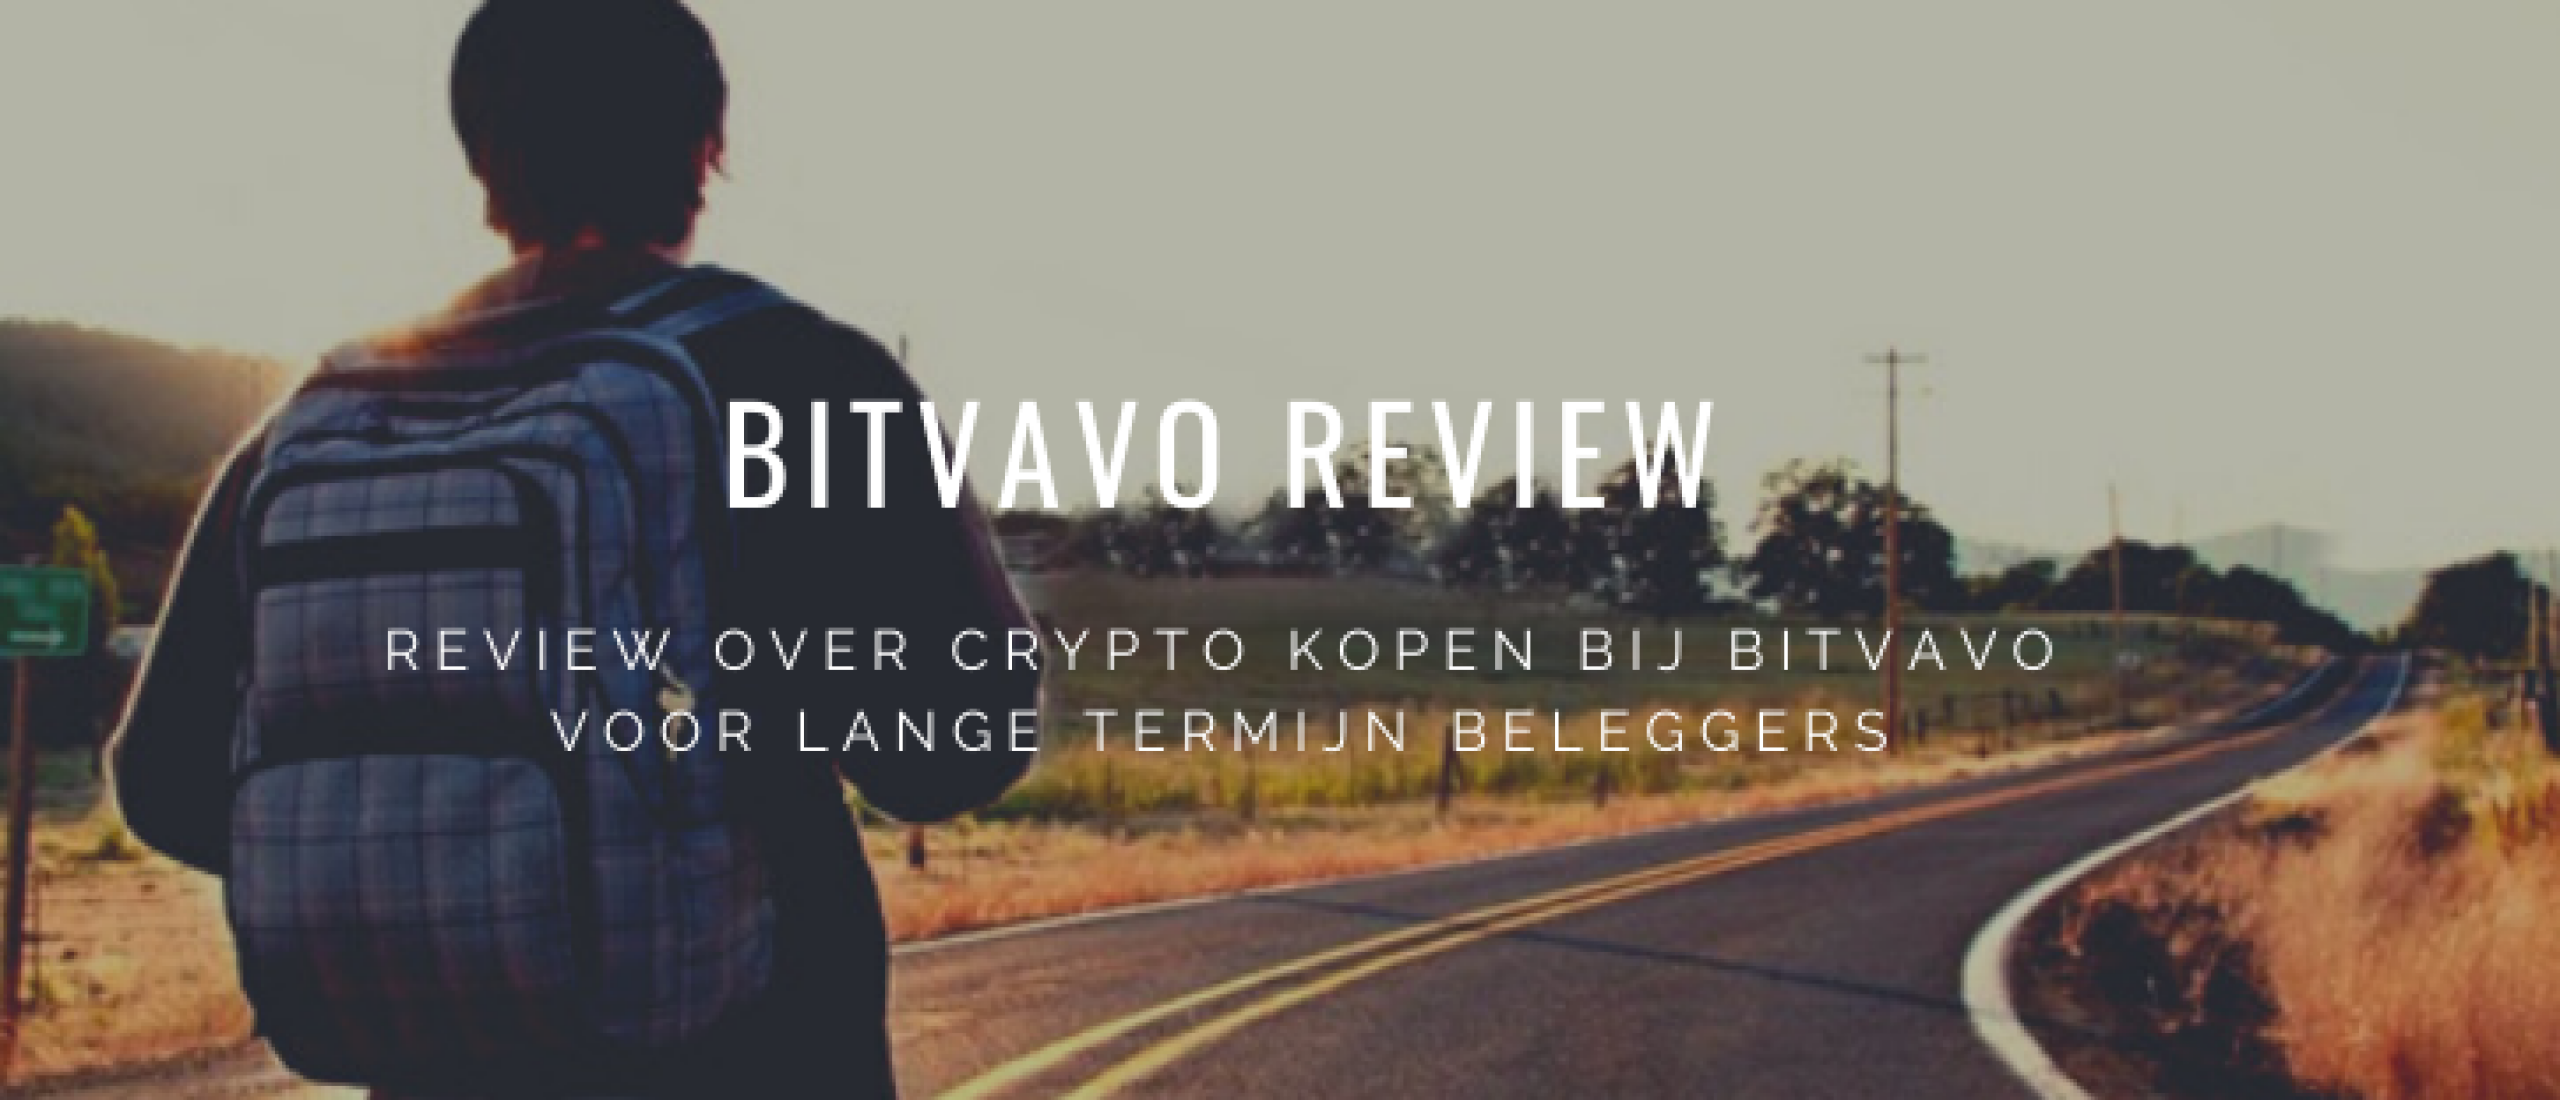 Bitvavo Review: Crypto Kopen als Lange Termijn Belegging | Happy Investors